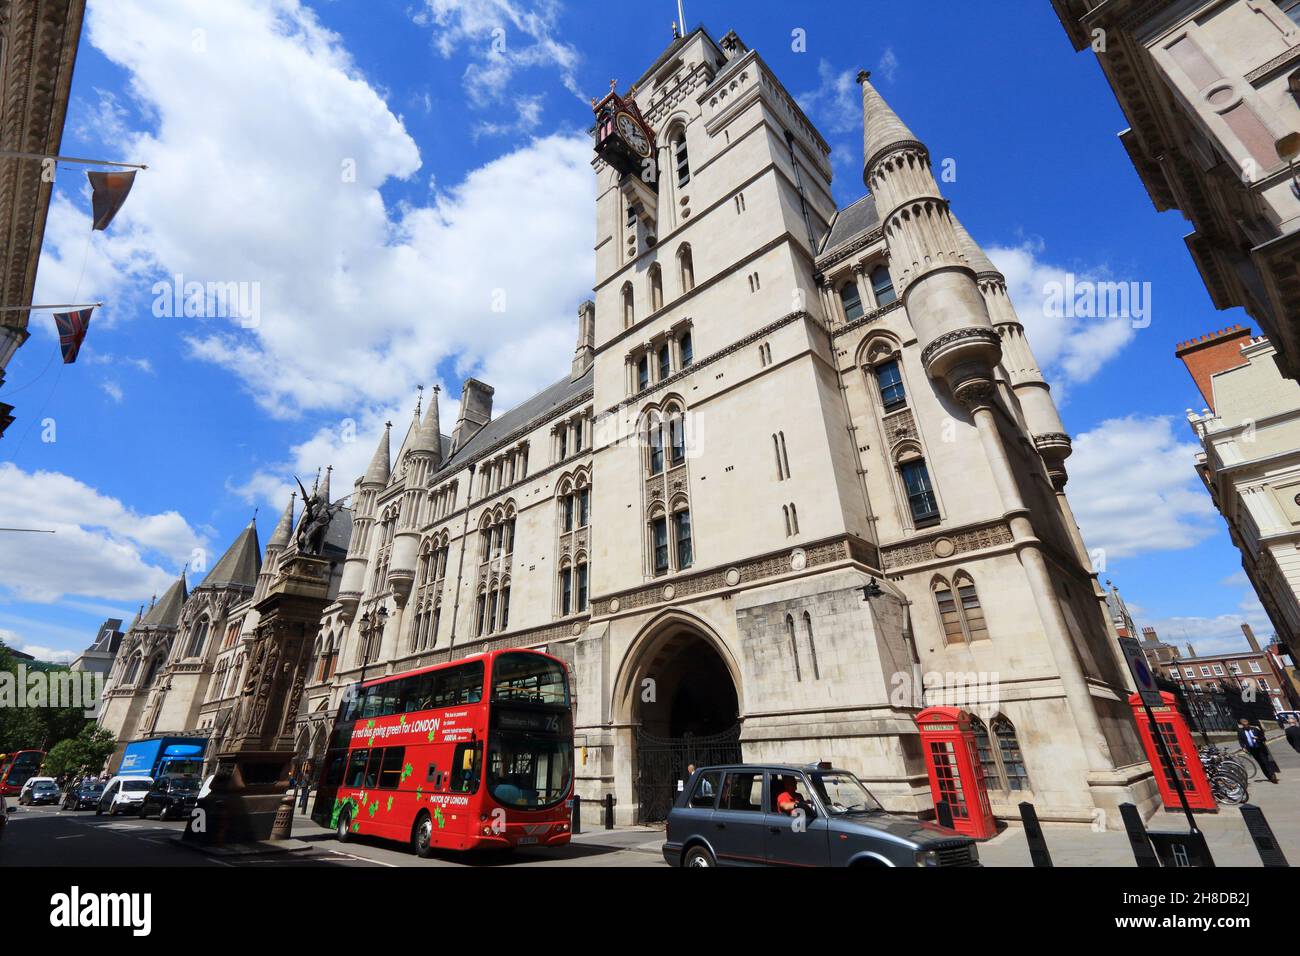 LONDRA, Regno Unito - 6 LUGLIO 2016: La gente ride autobus a due piani presso lo Strand, Londra, Regno Unito. Il trasporto per Londra (TFL) opera 8,000 autobus su 673 linee. Foto Stock